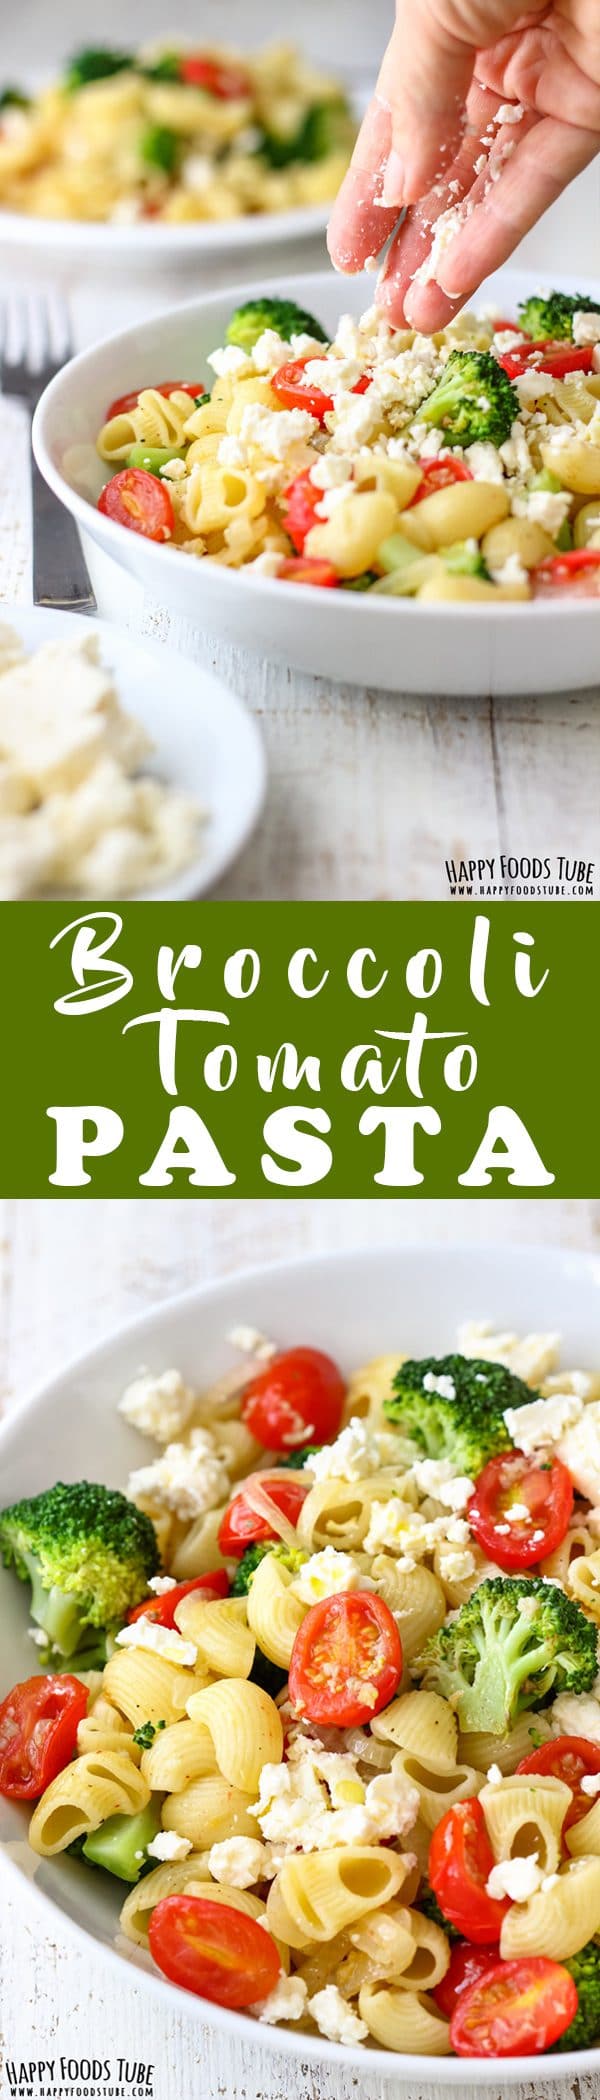 Broccoli Tomato Pasta Salad Recipe Picture